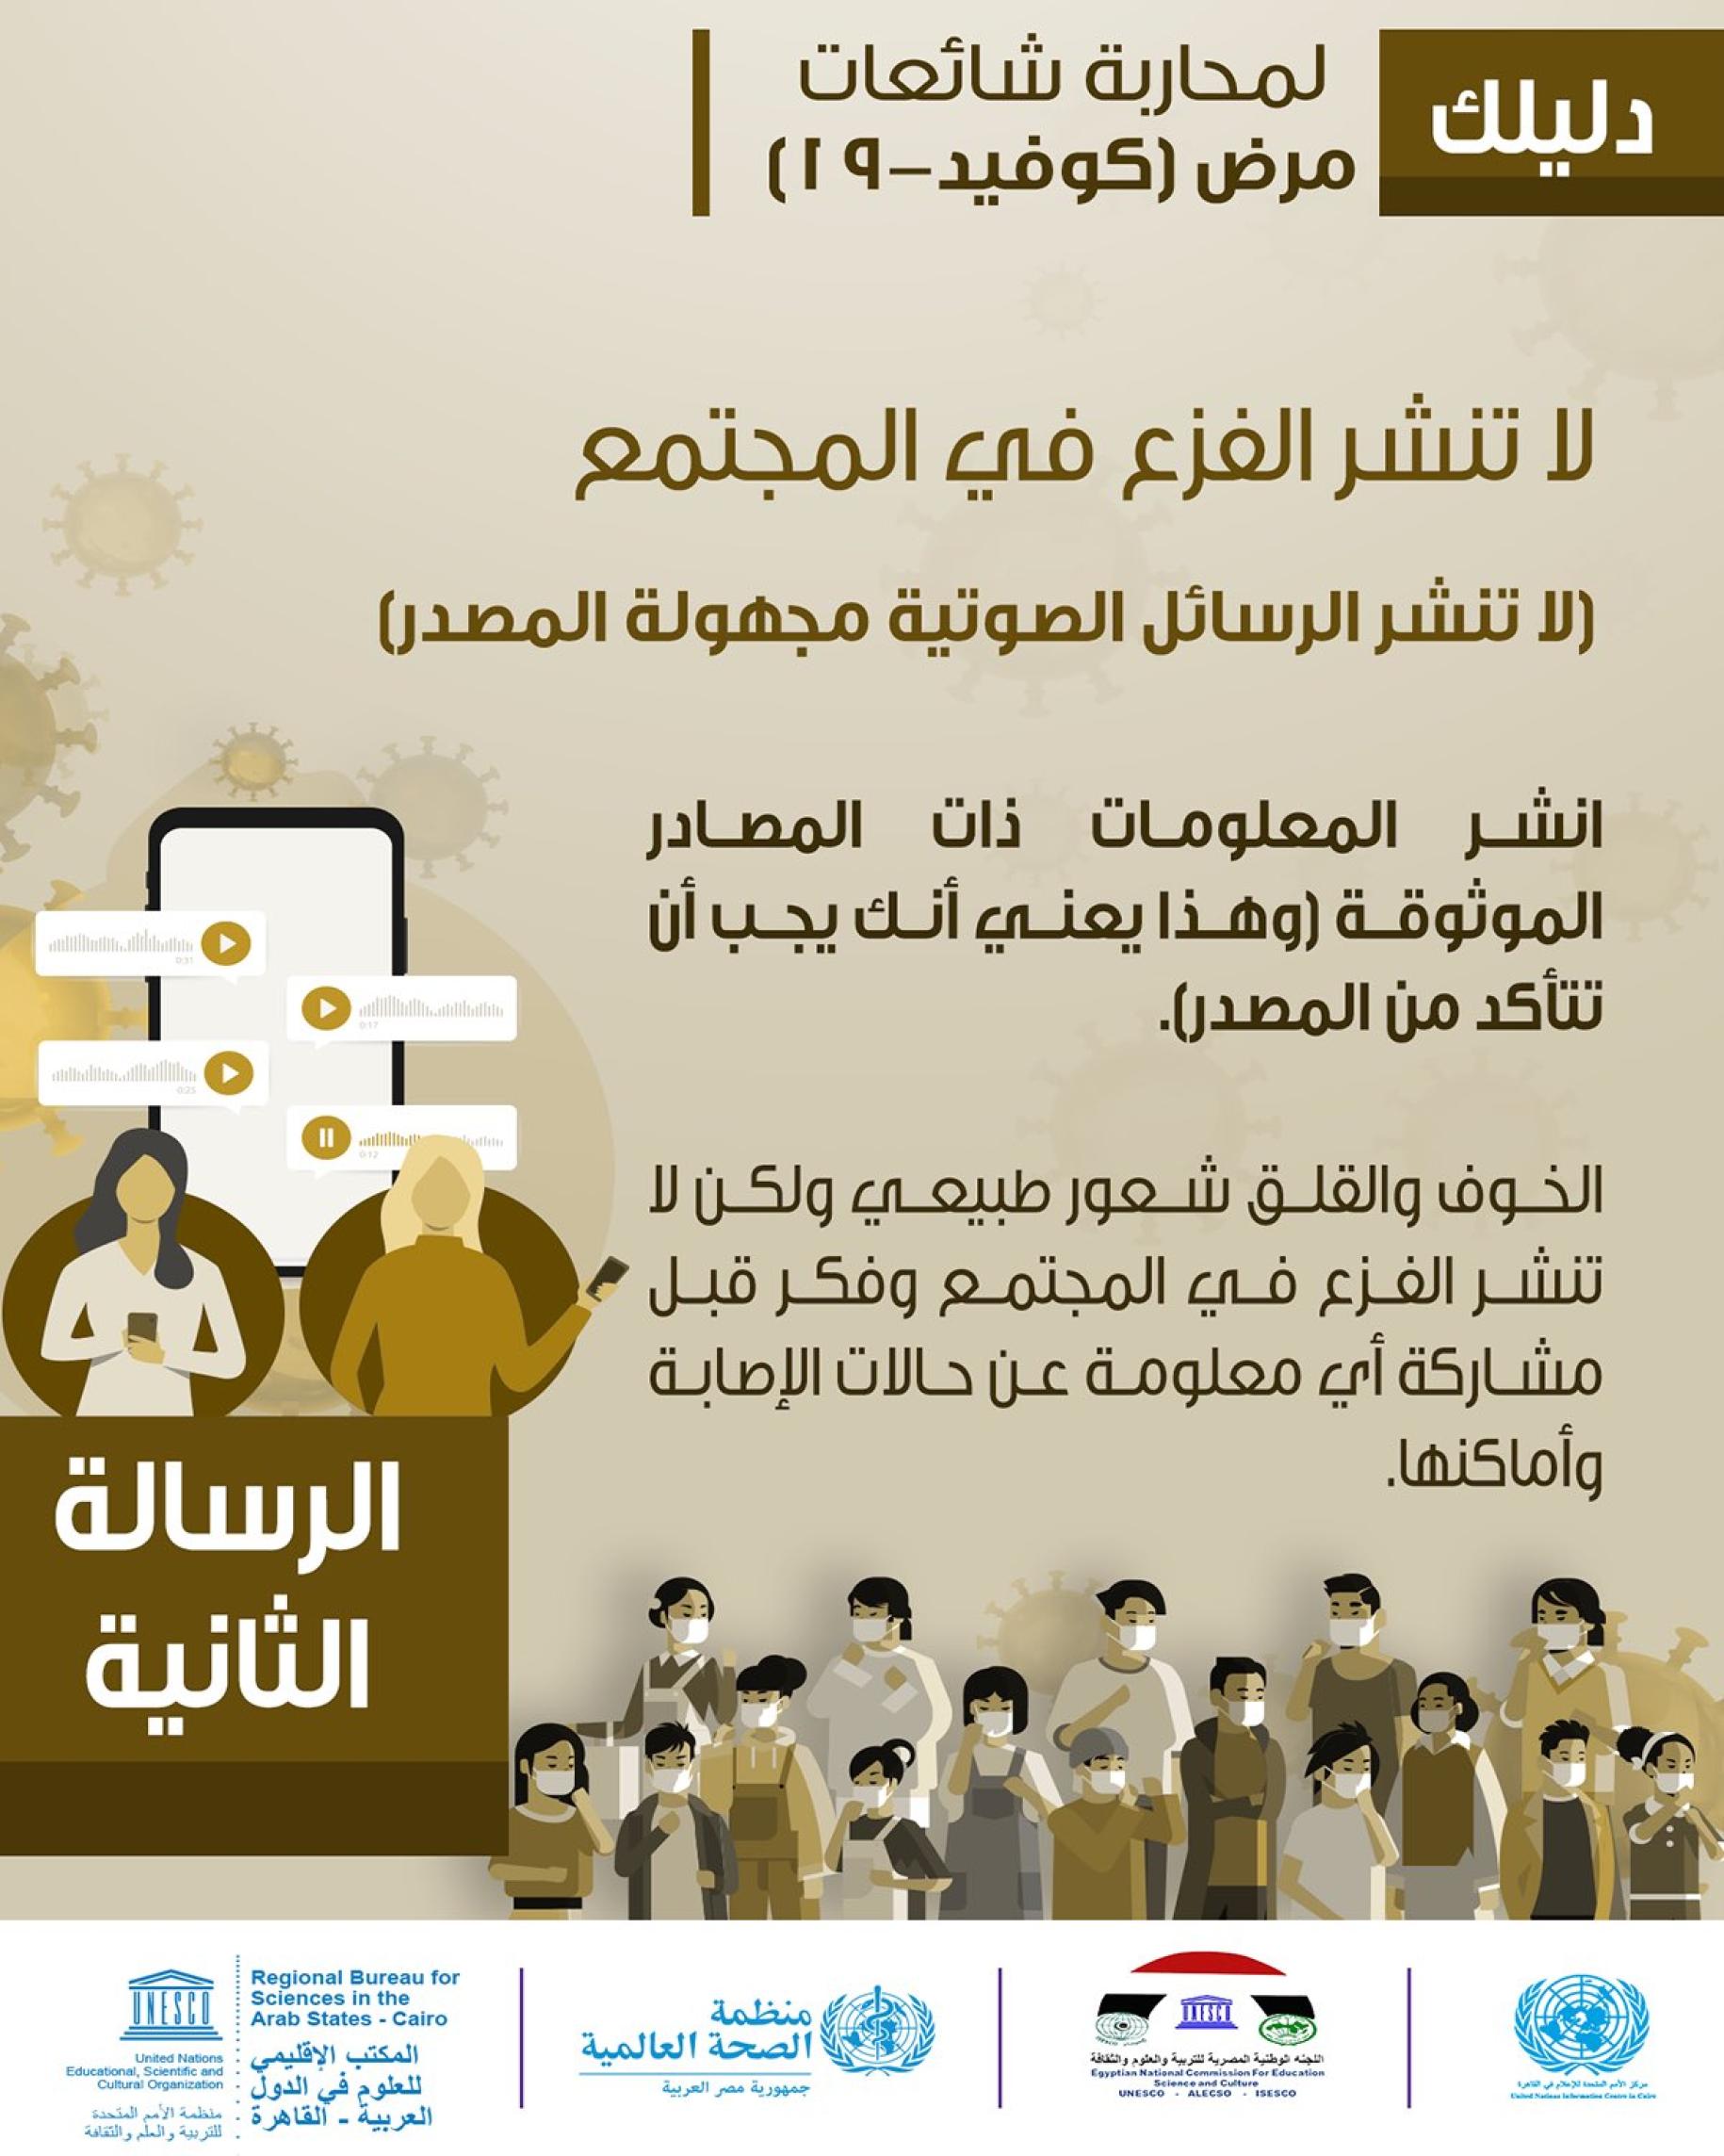 Muestra una tarjeta de medios sociales con texto en árabe que explica la validez de las fuentes y lo que hay que evitar.